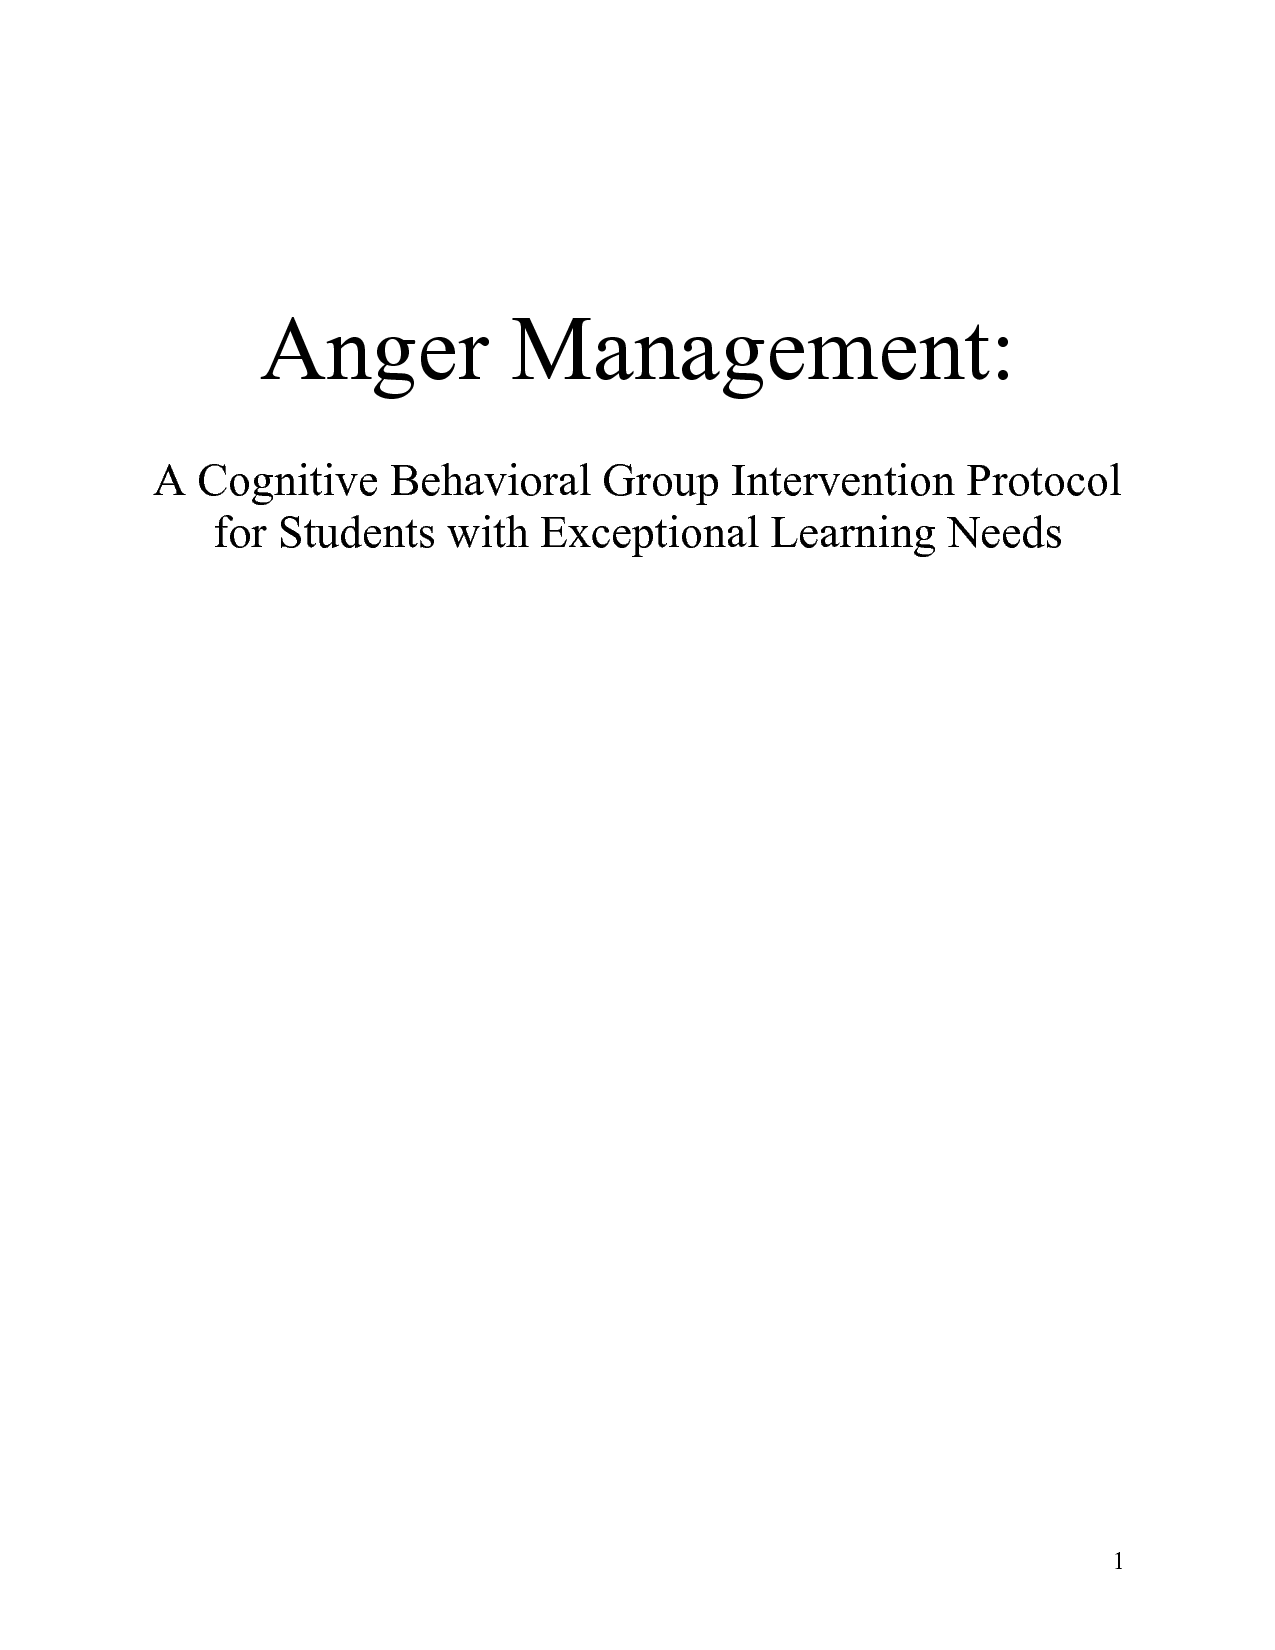 Anger Management Worksheet PDF Image